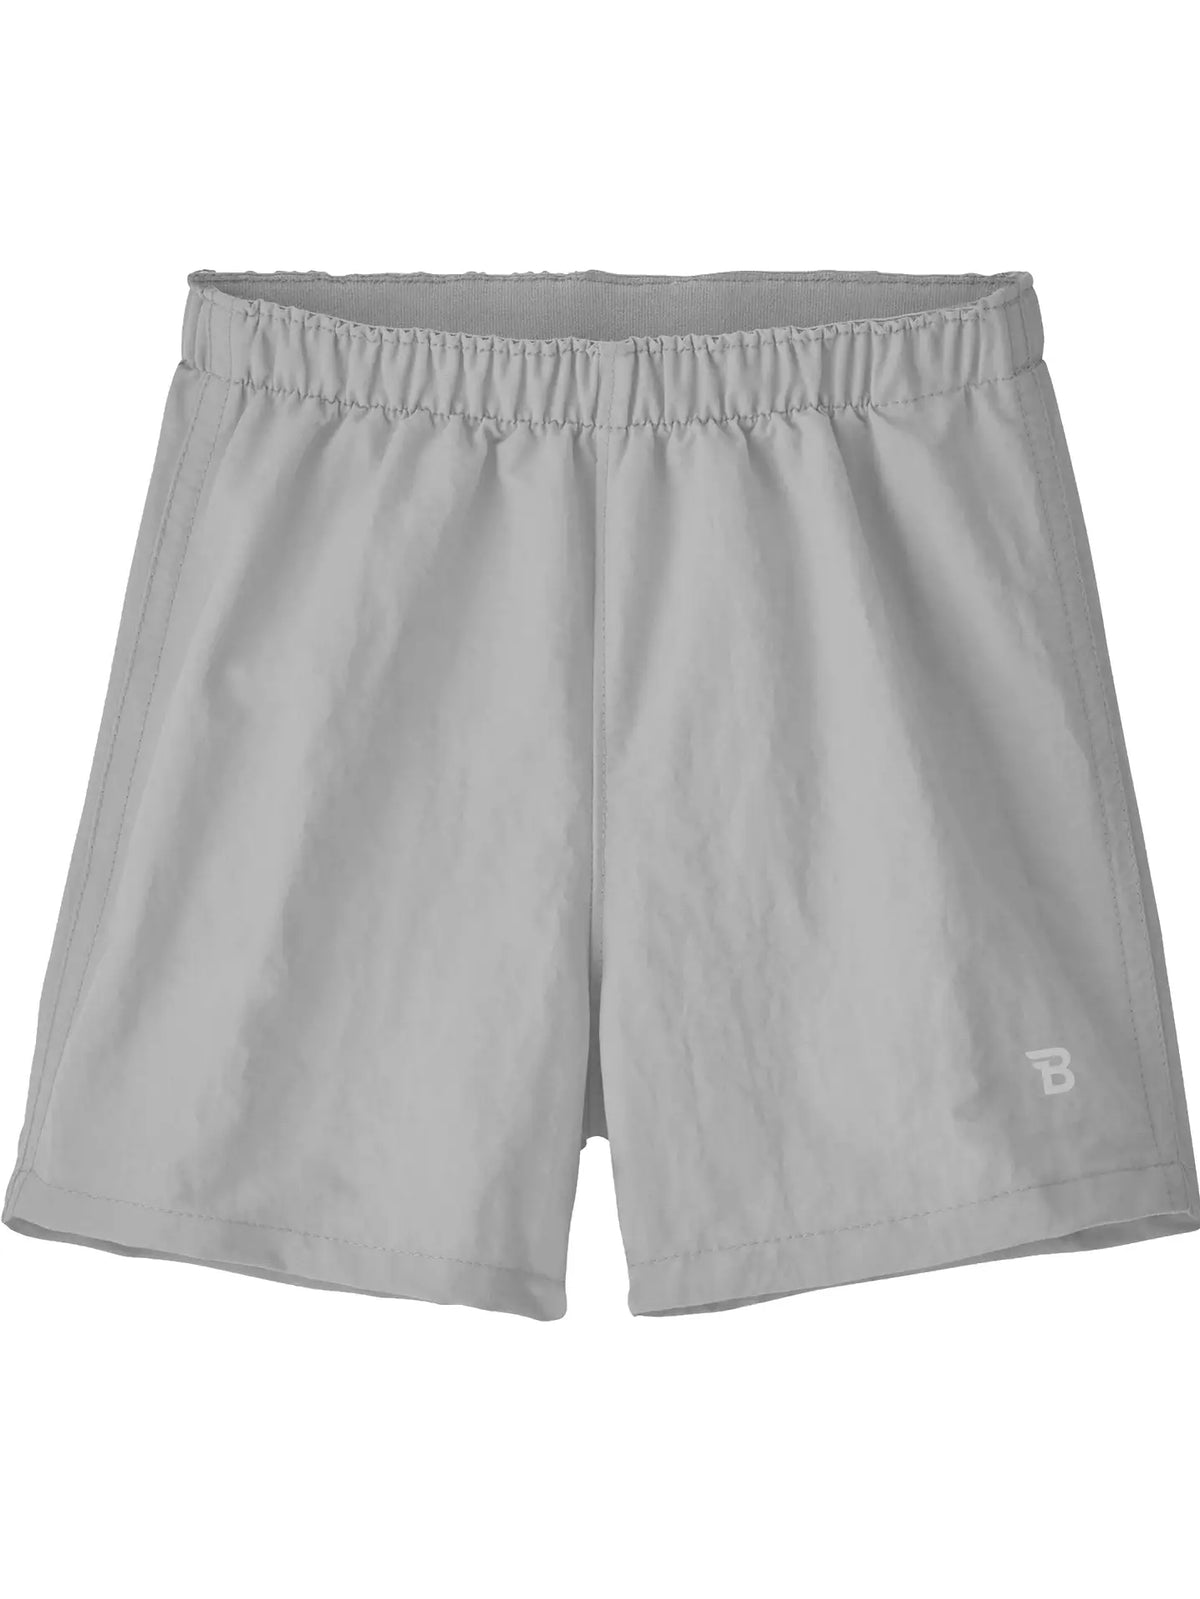 UPF 50+ Boys Water Shorts - Gray